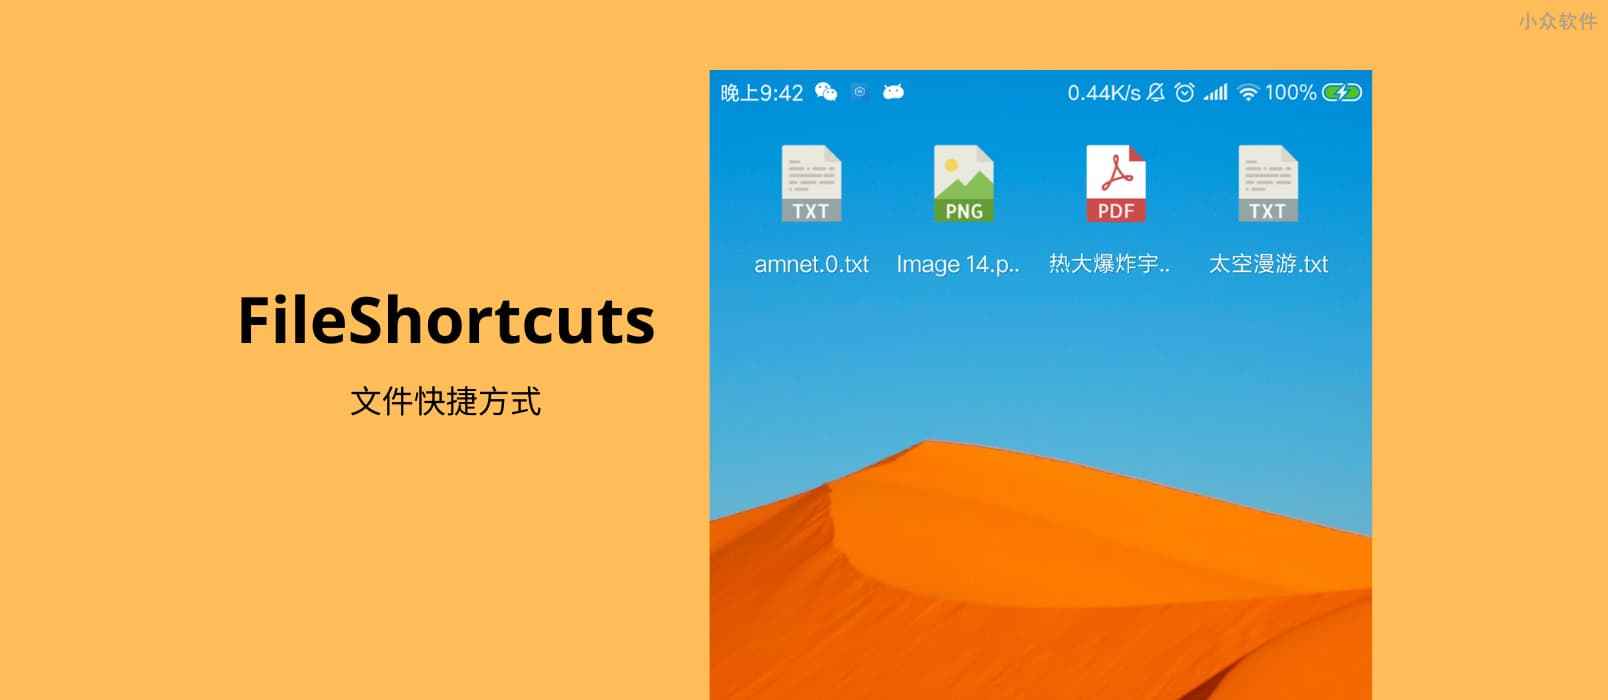 FileShortcuts – 在 Android 桌面创建文档快捷方式